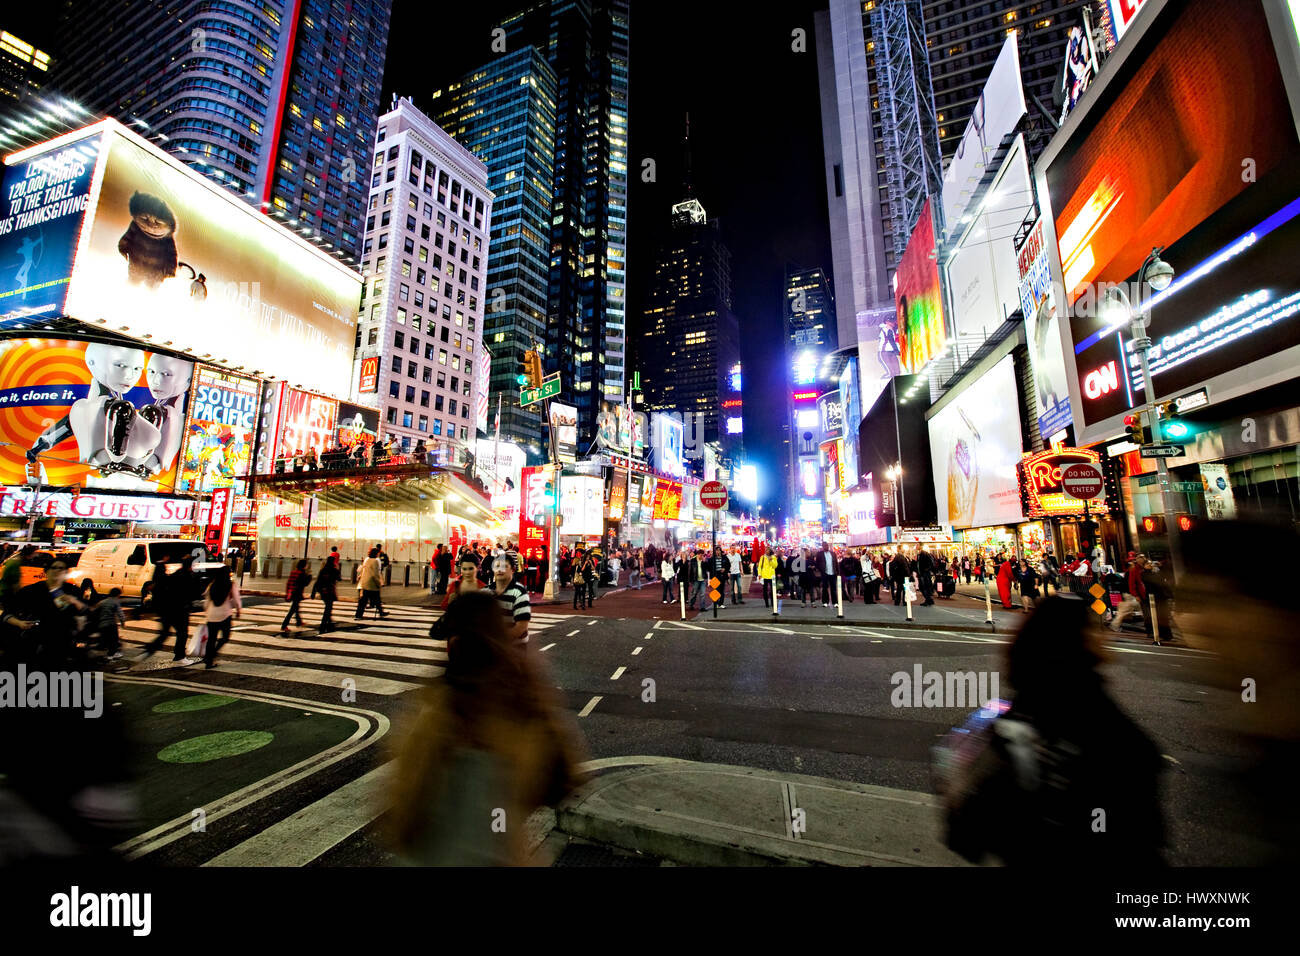 La famosa Times Square nel centro cittadino di Manhattan in corrispondenza della giunzione di Broadway e la Settima Avenue. Il Times Square è uno dei più visitati al mondo attra Foto Stock